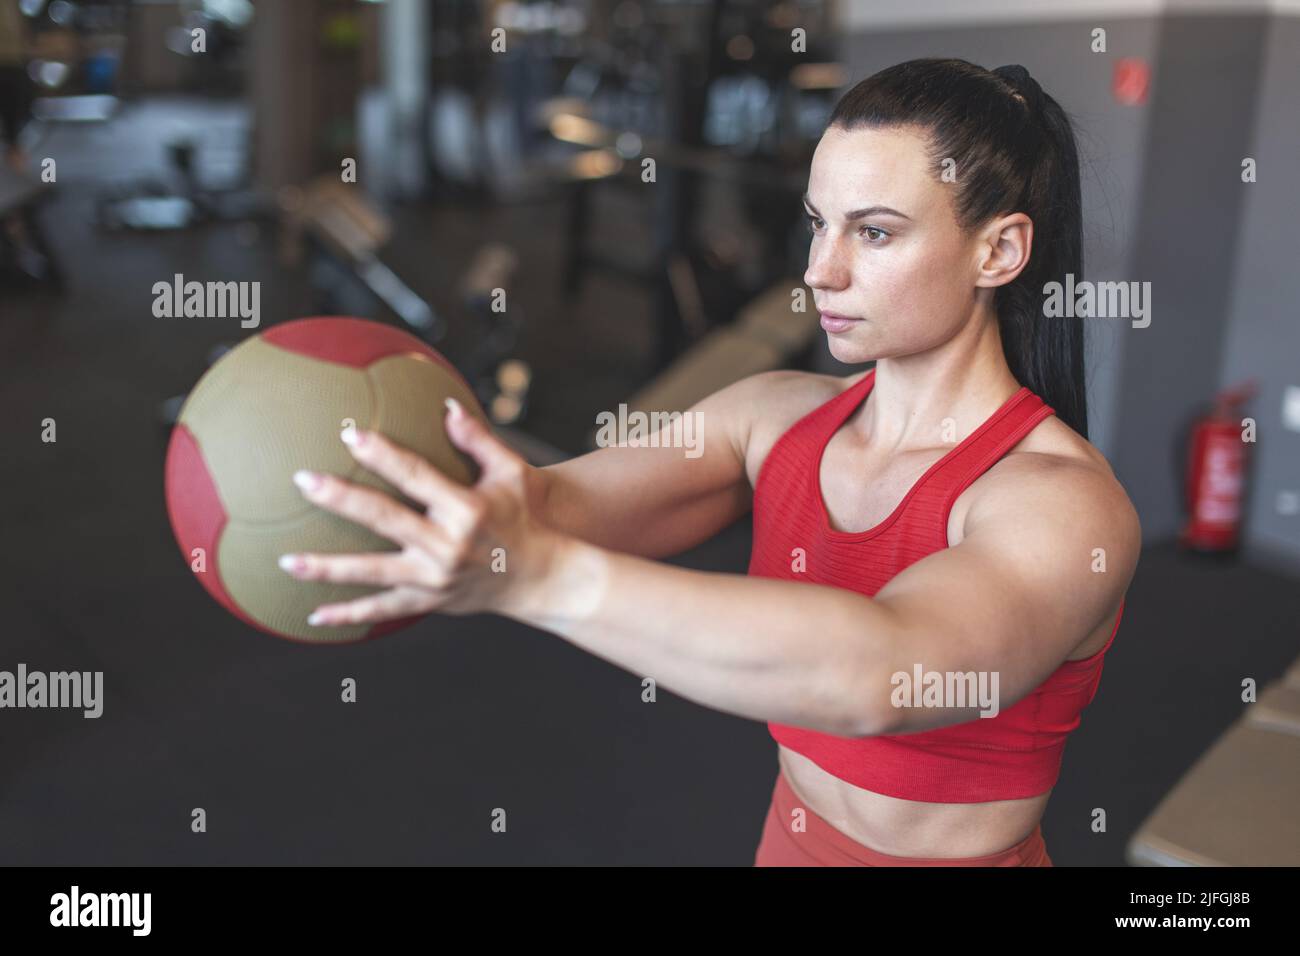 Junge kaukasische Frau, die Übung durch Medizinball im Fitnessstudio macht Stockfoto